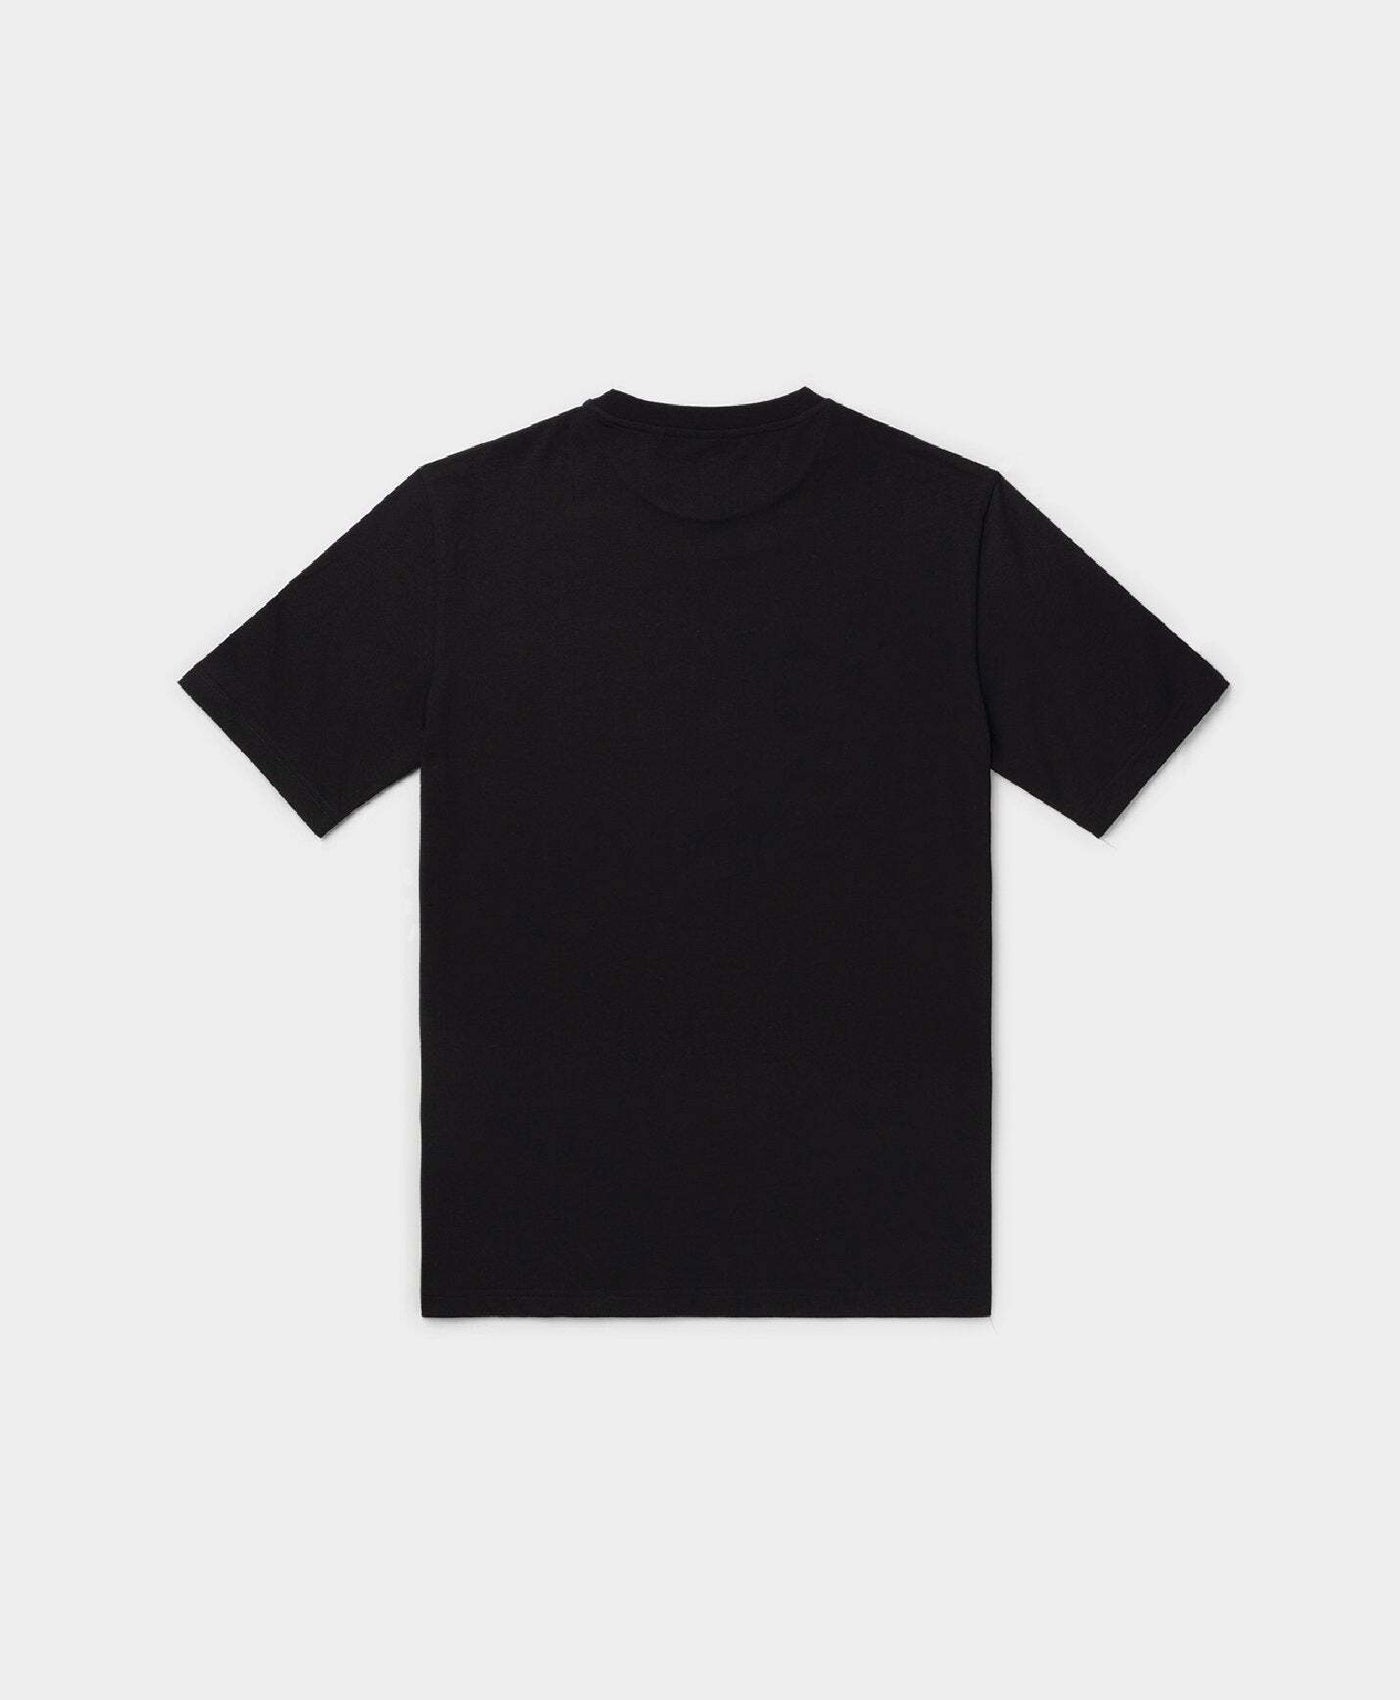 DP - Black Escript T-Shirt - Packshot - Rear